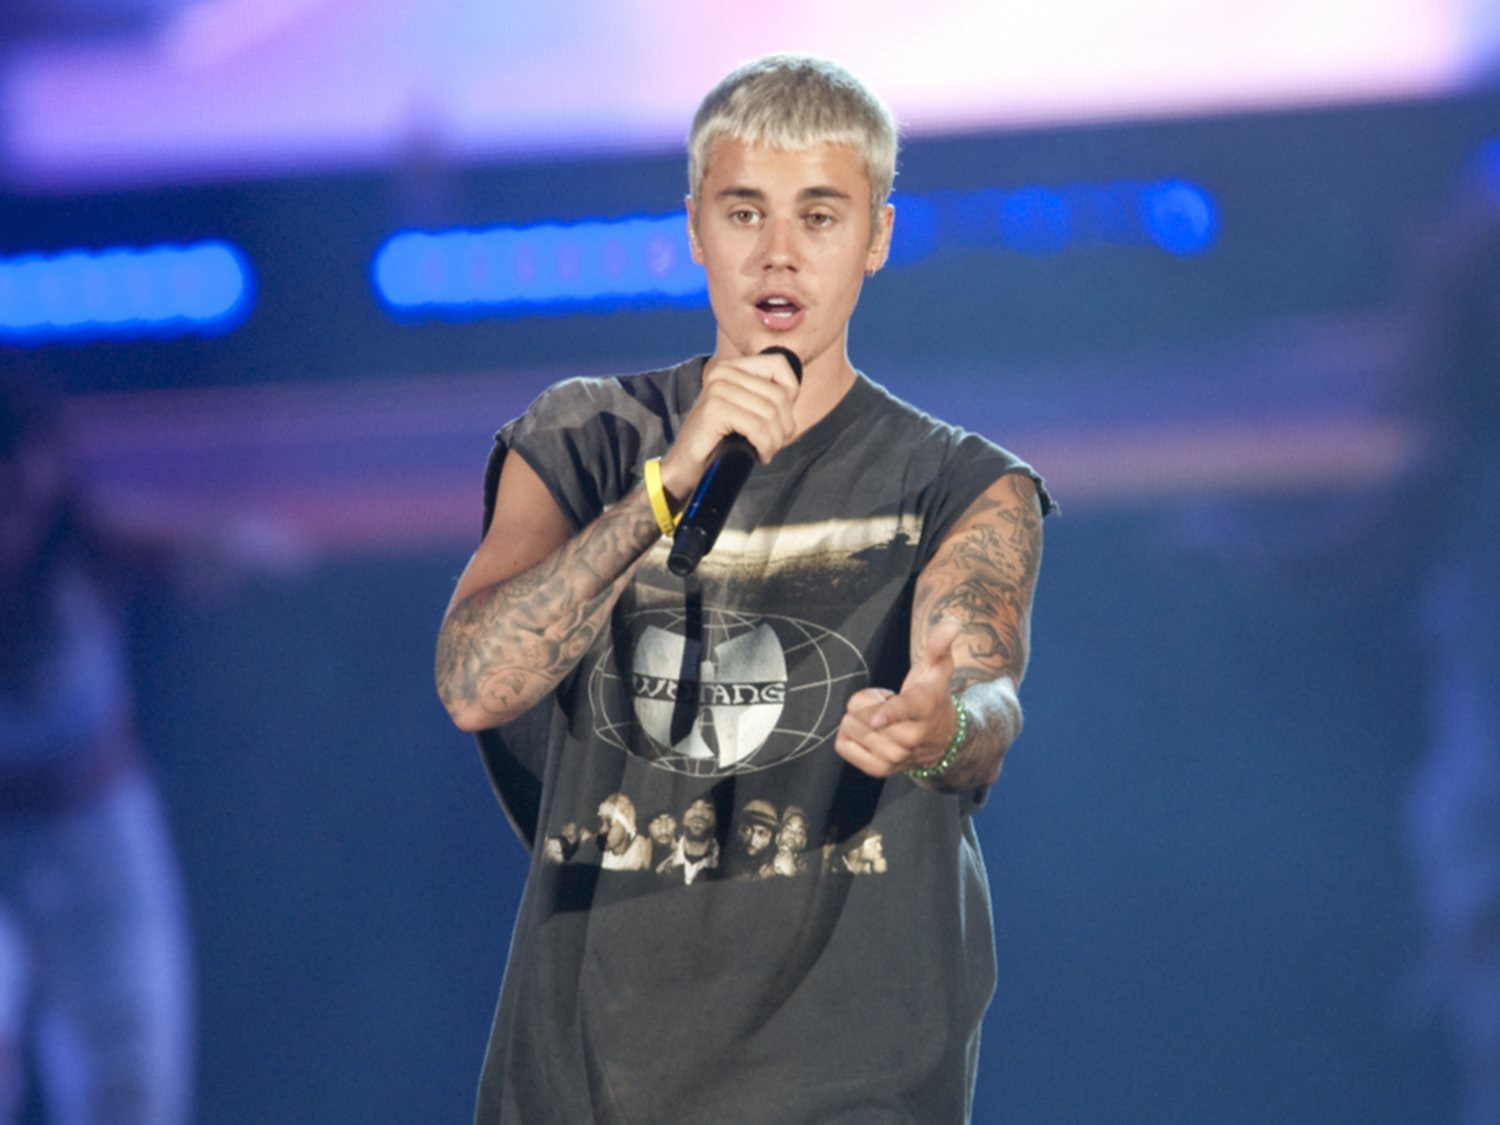 El drástico cambio físico de Justin Bieber que preocupa a sus fans por su estado de salud